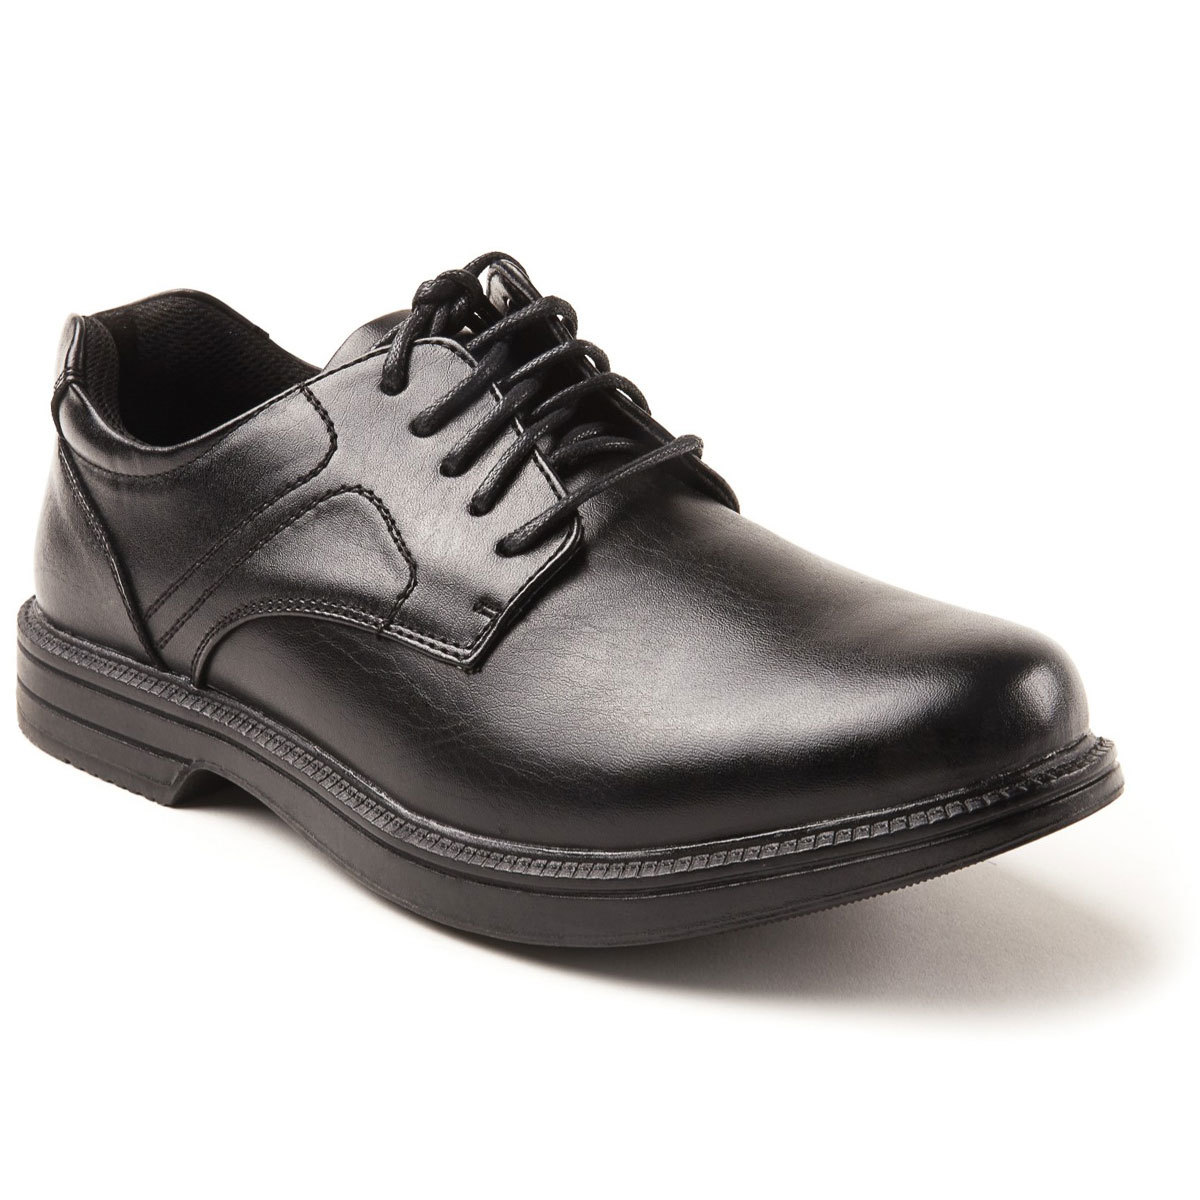 Deer Stags Men's Nu Times Waterproof Service Shoes - Black, 7W